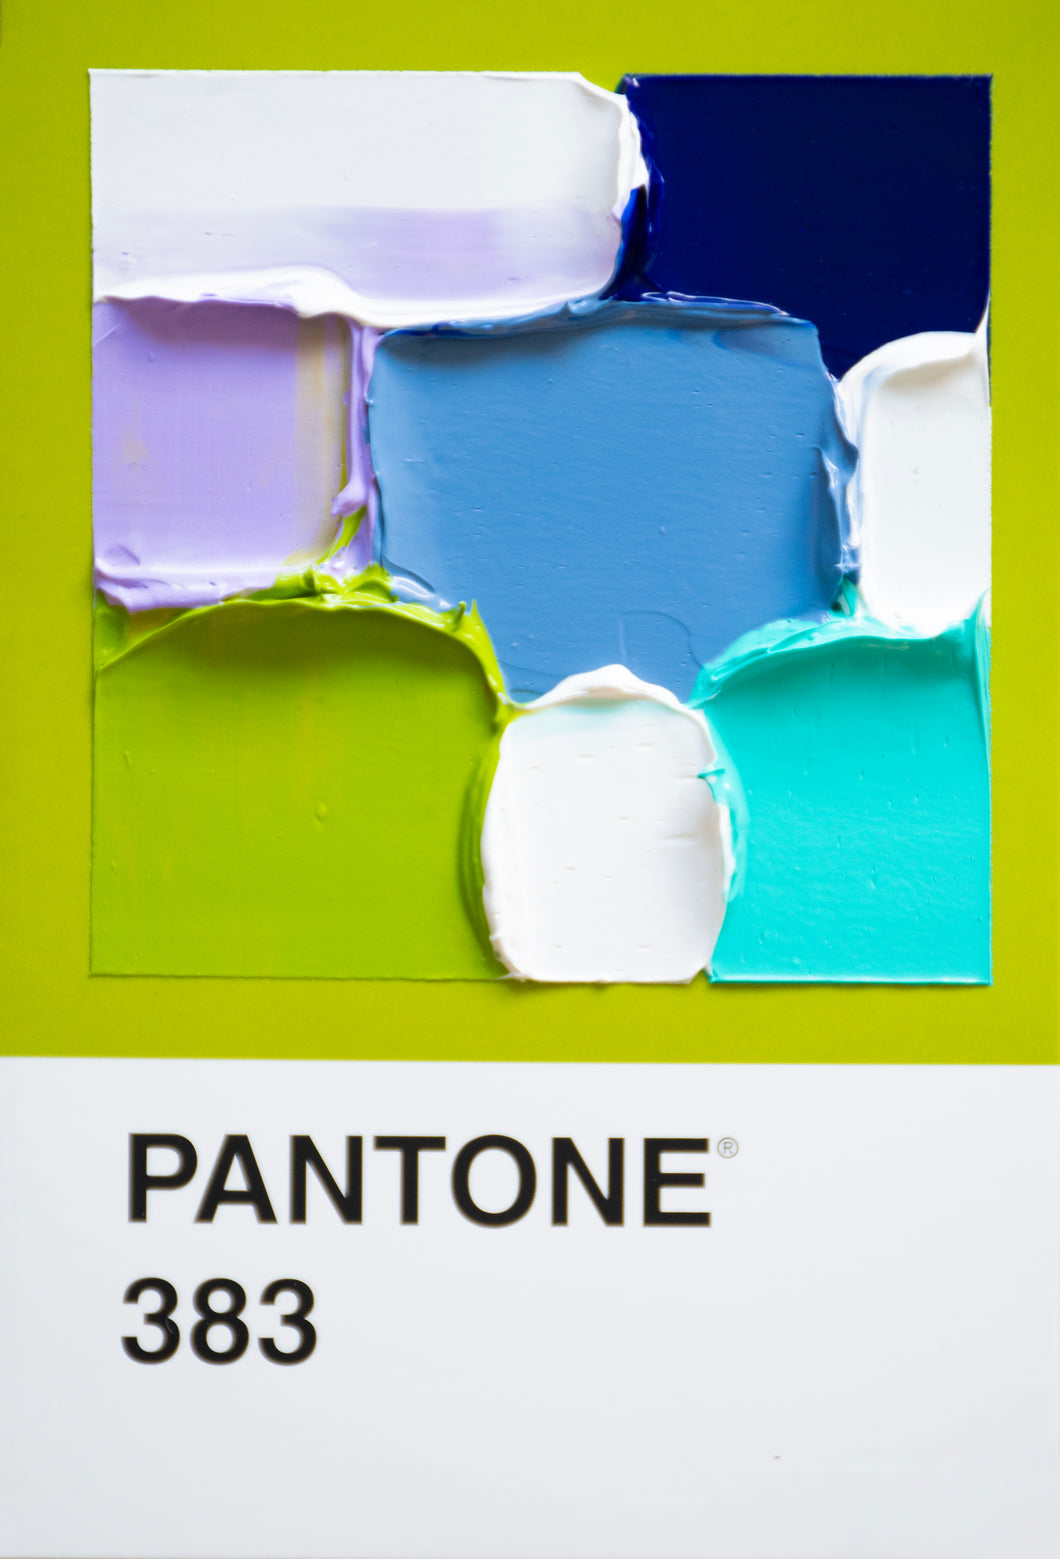 Pantone 383